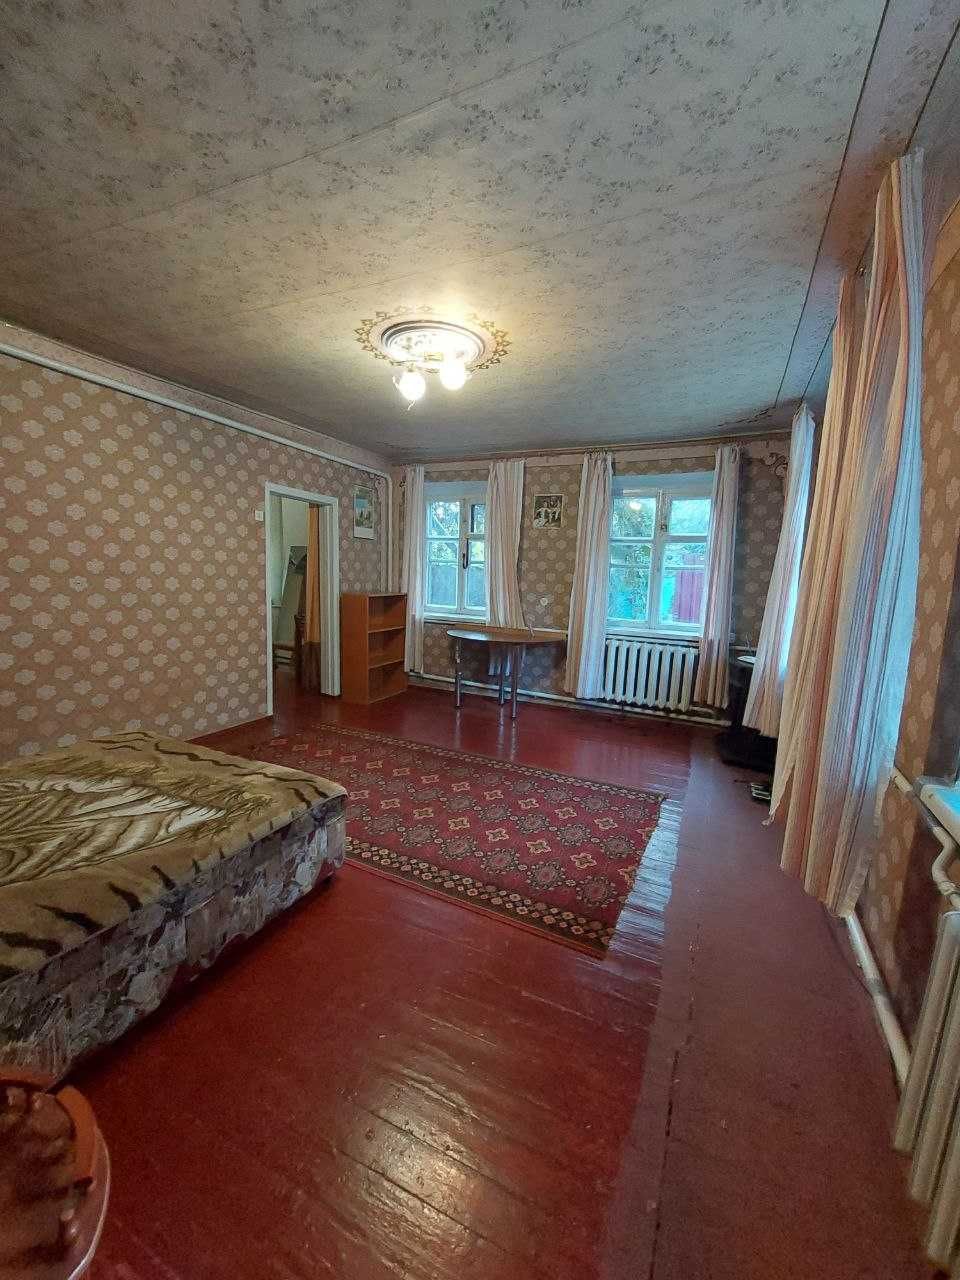 Продам 3-комнатный  дом в Одинковке до Самарского разлива  200 м.